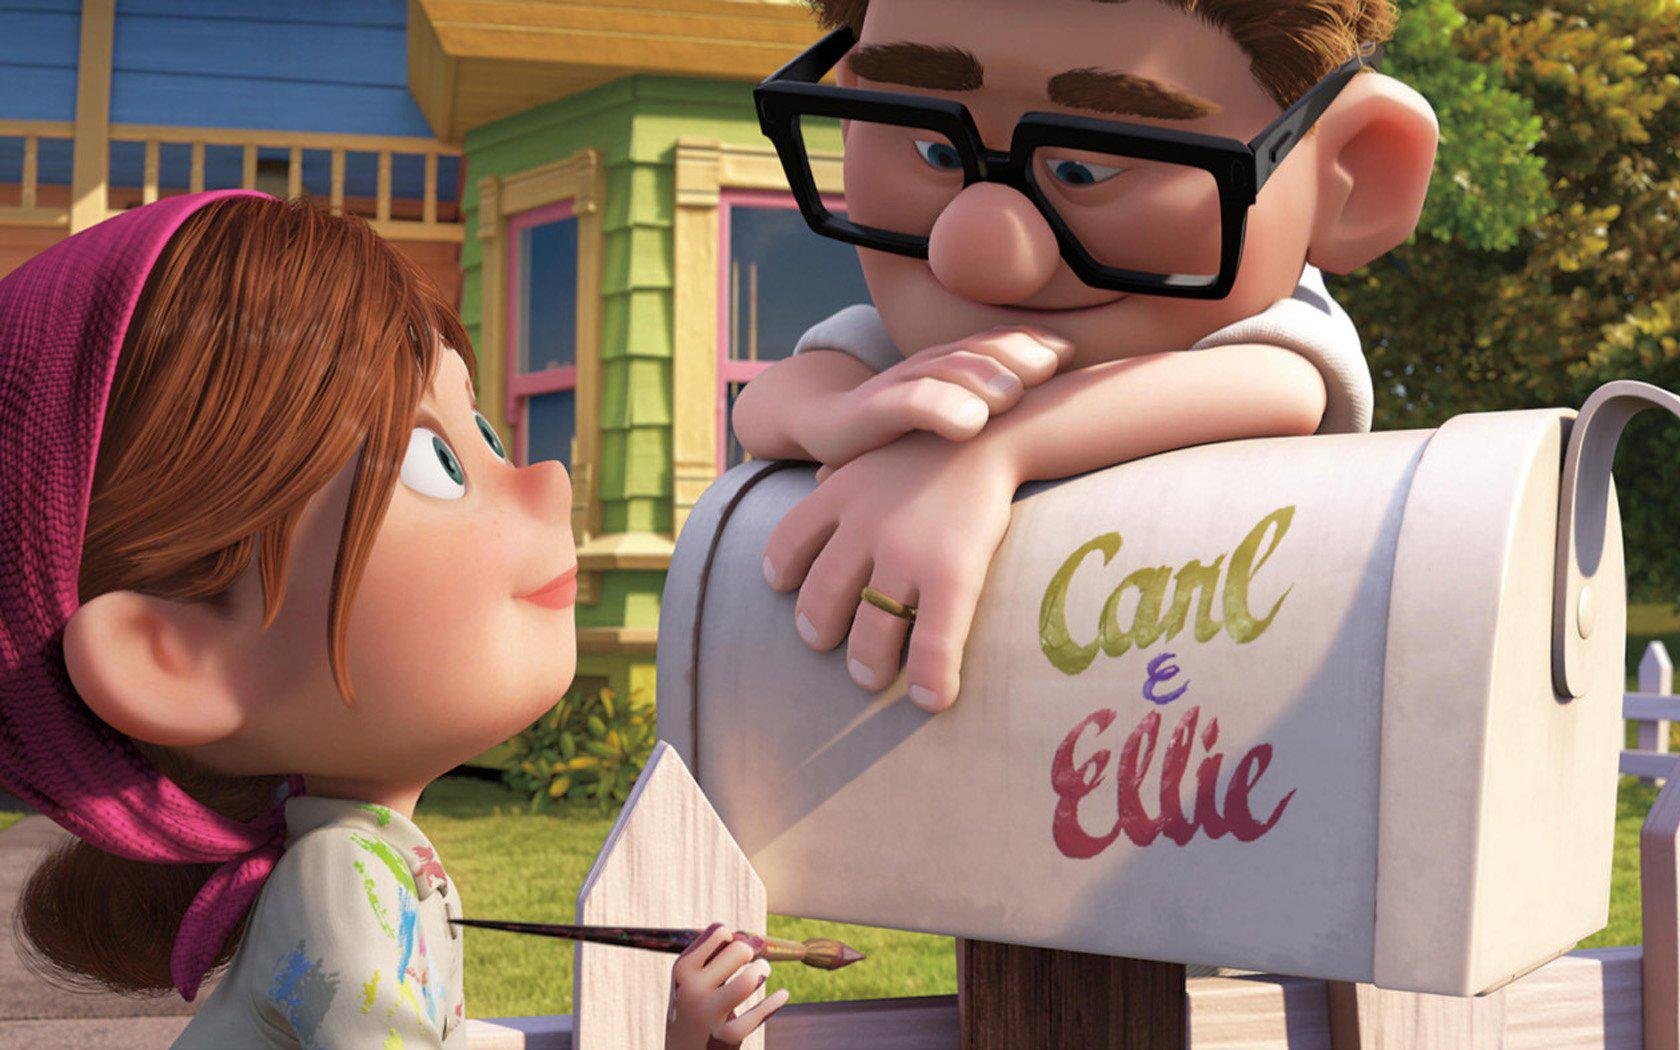 Up Altas Aventuras: 13 lições que aprendemos com o filme da Pixar